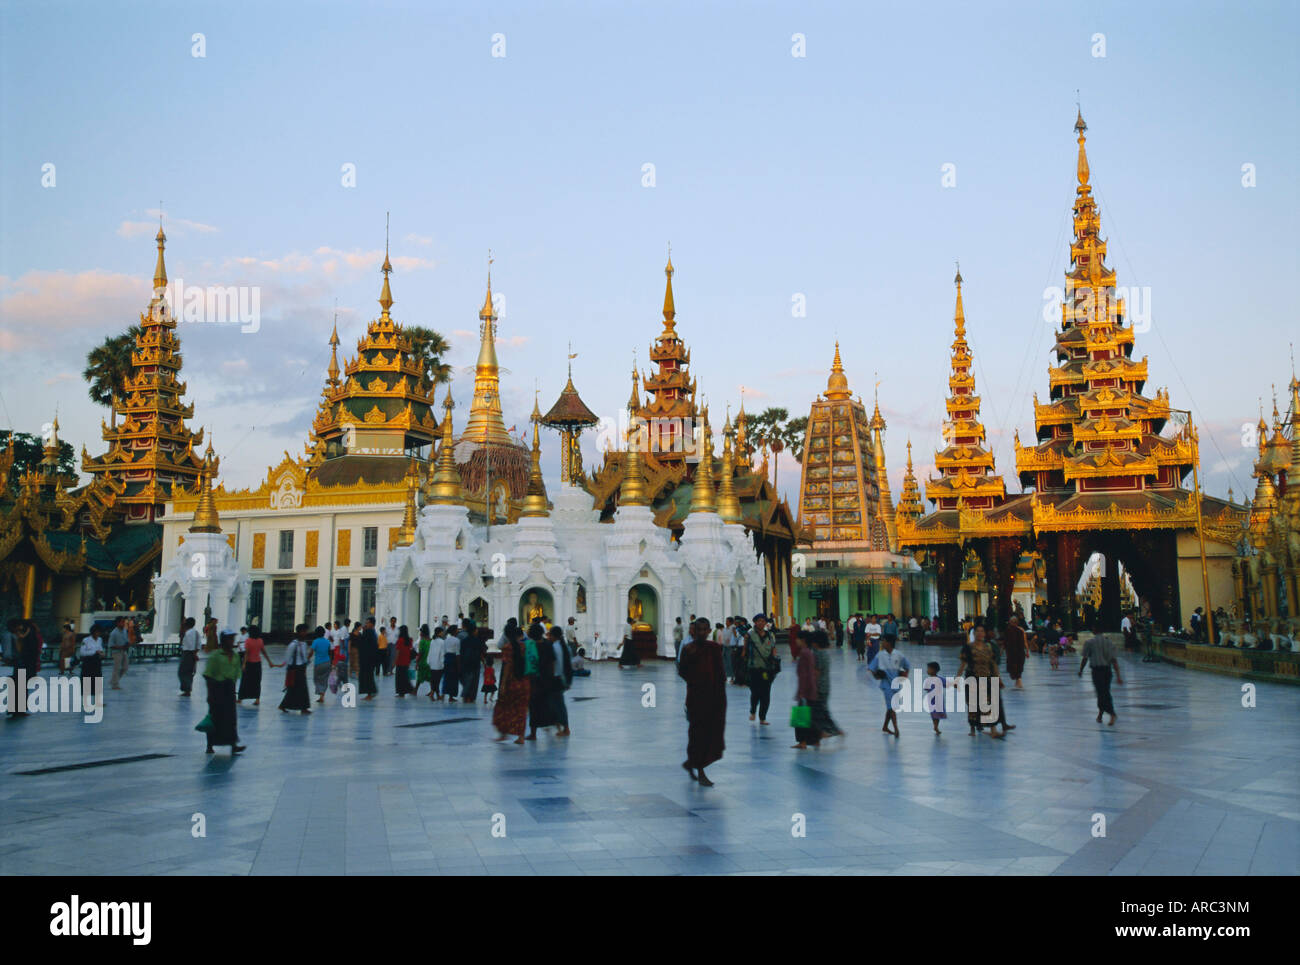 Dôme doré de la pagode Shwedagon la pagode Shwe Dagon (Paya) au crépuscule, Yangon (Rangoon), le Myanmar (Birmanie), l'Asie Banque D'Images